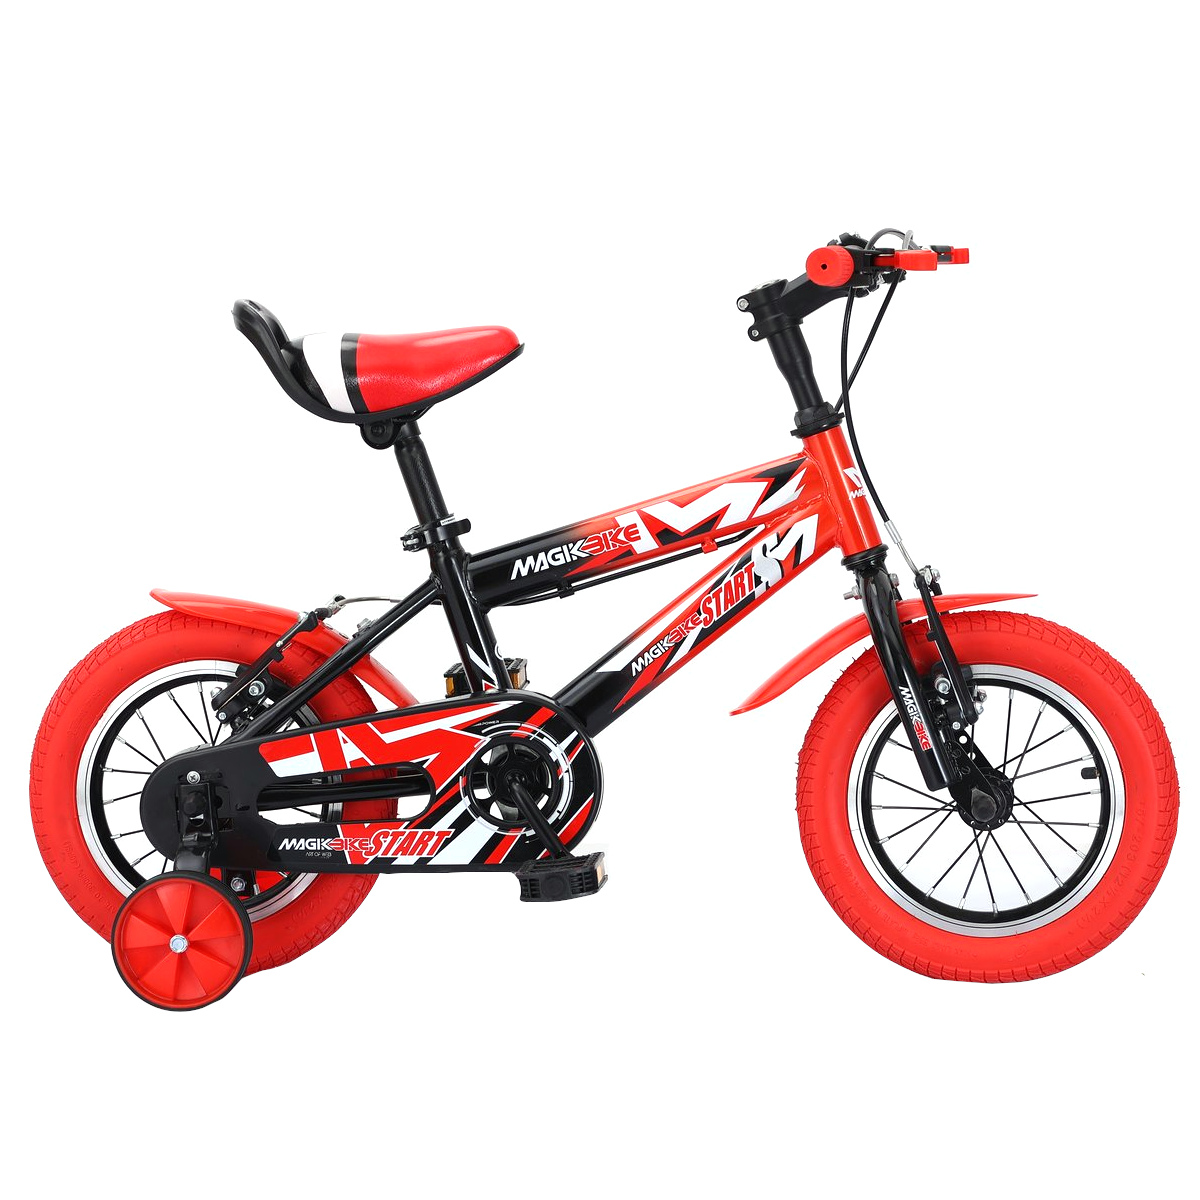 Bicicleta Niños 16 Pulgadas Magikbike Start 5-7 Años - rojo - 